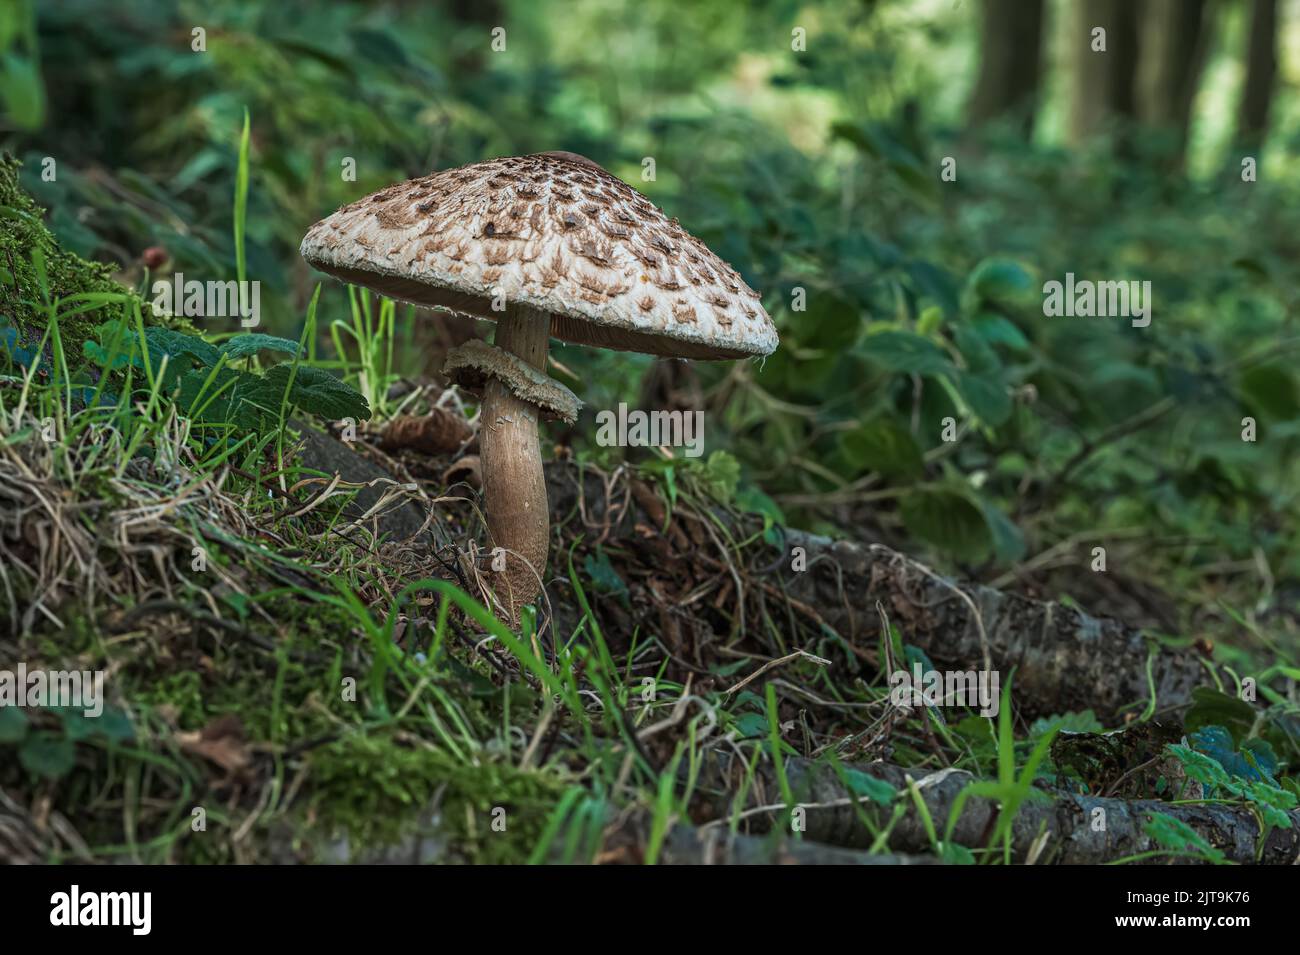 Fungi growing in a woodland setting on Tittleshall Common, Tittleshall, Norfolk, UK Stock Photo